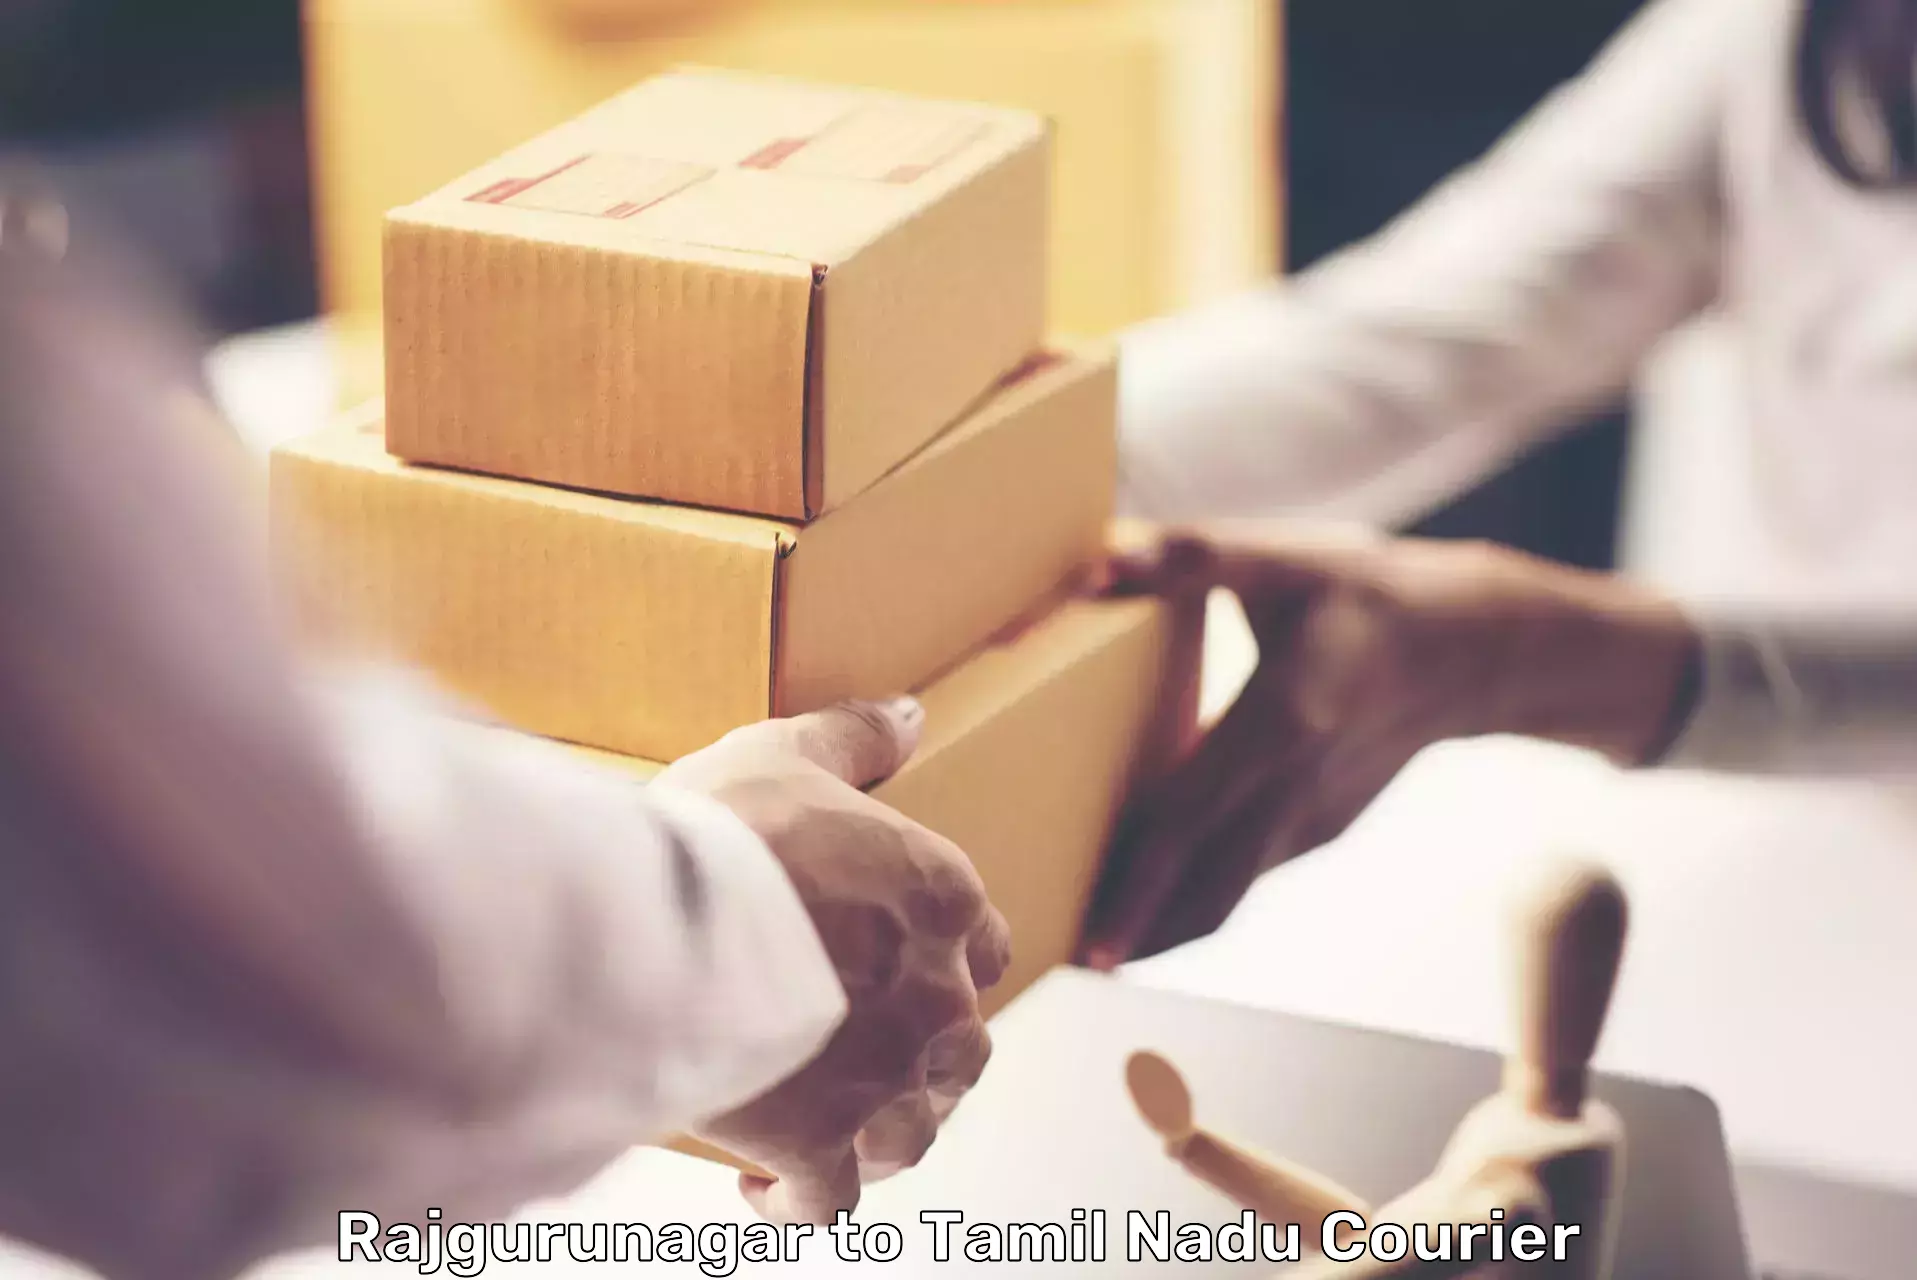 High-speed parcel service Rajgurunagar to Denkanikottai